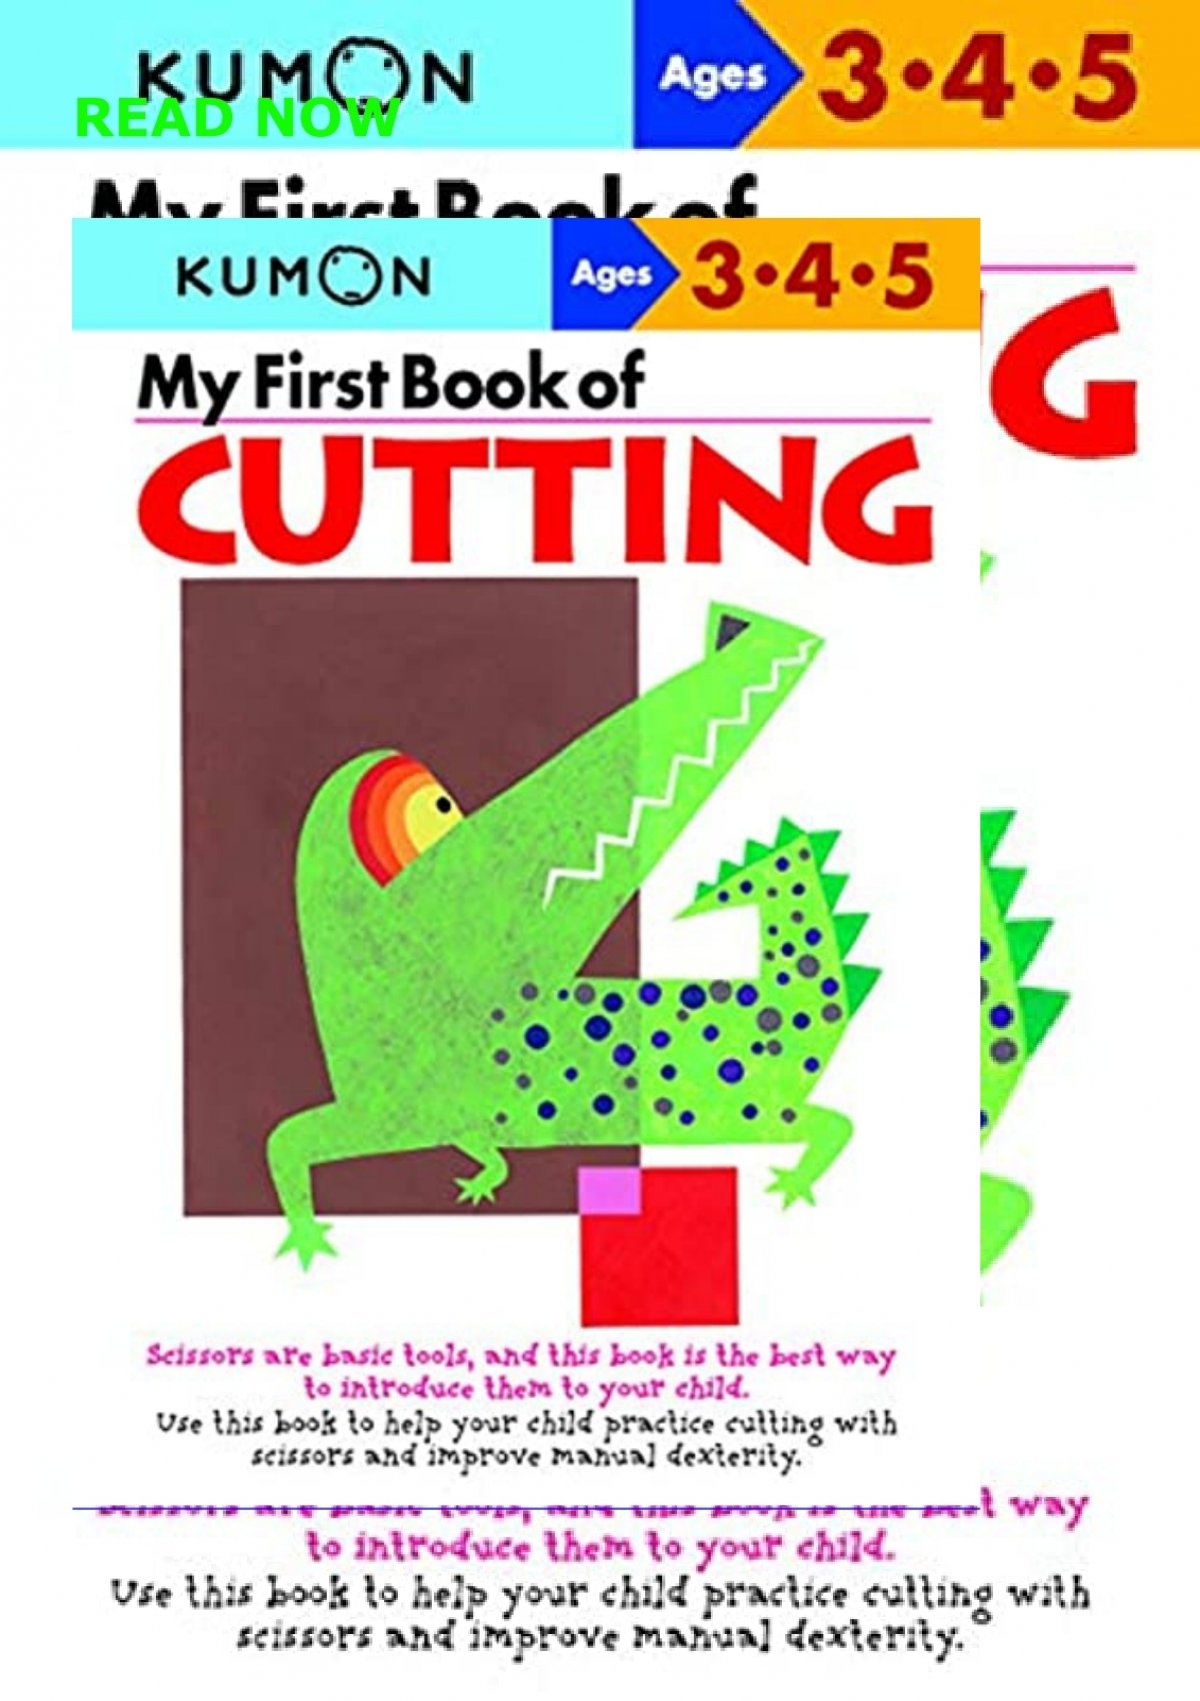 Kumon My Book of Cutting